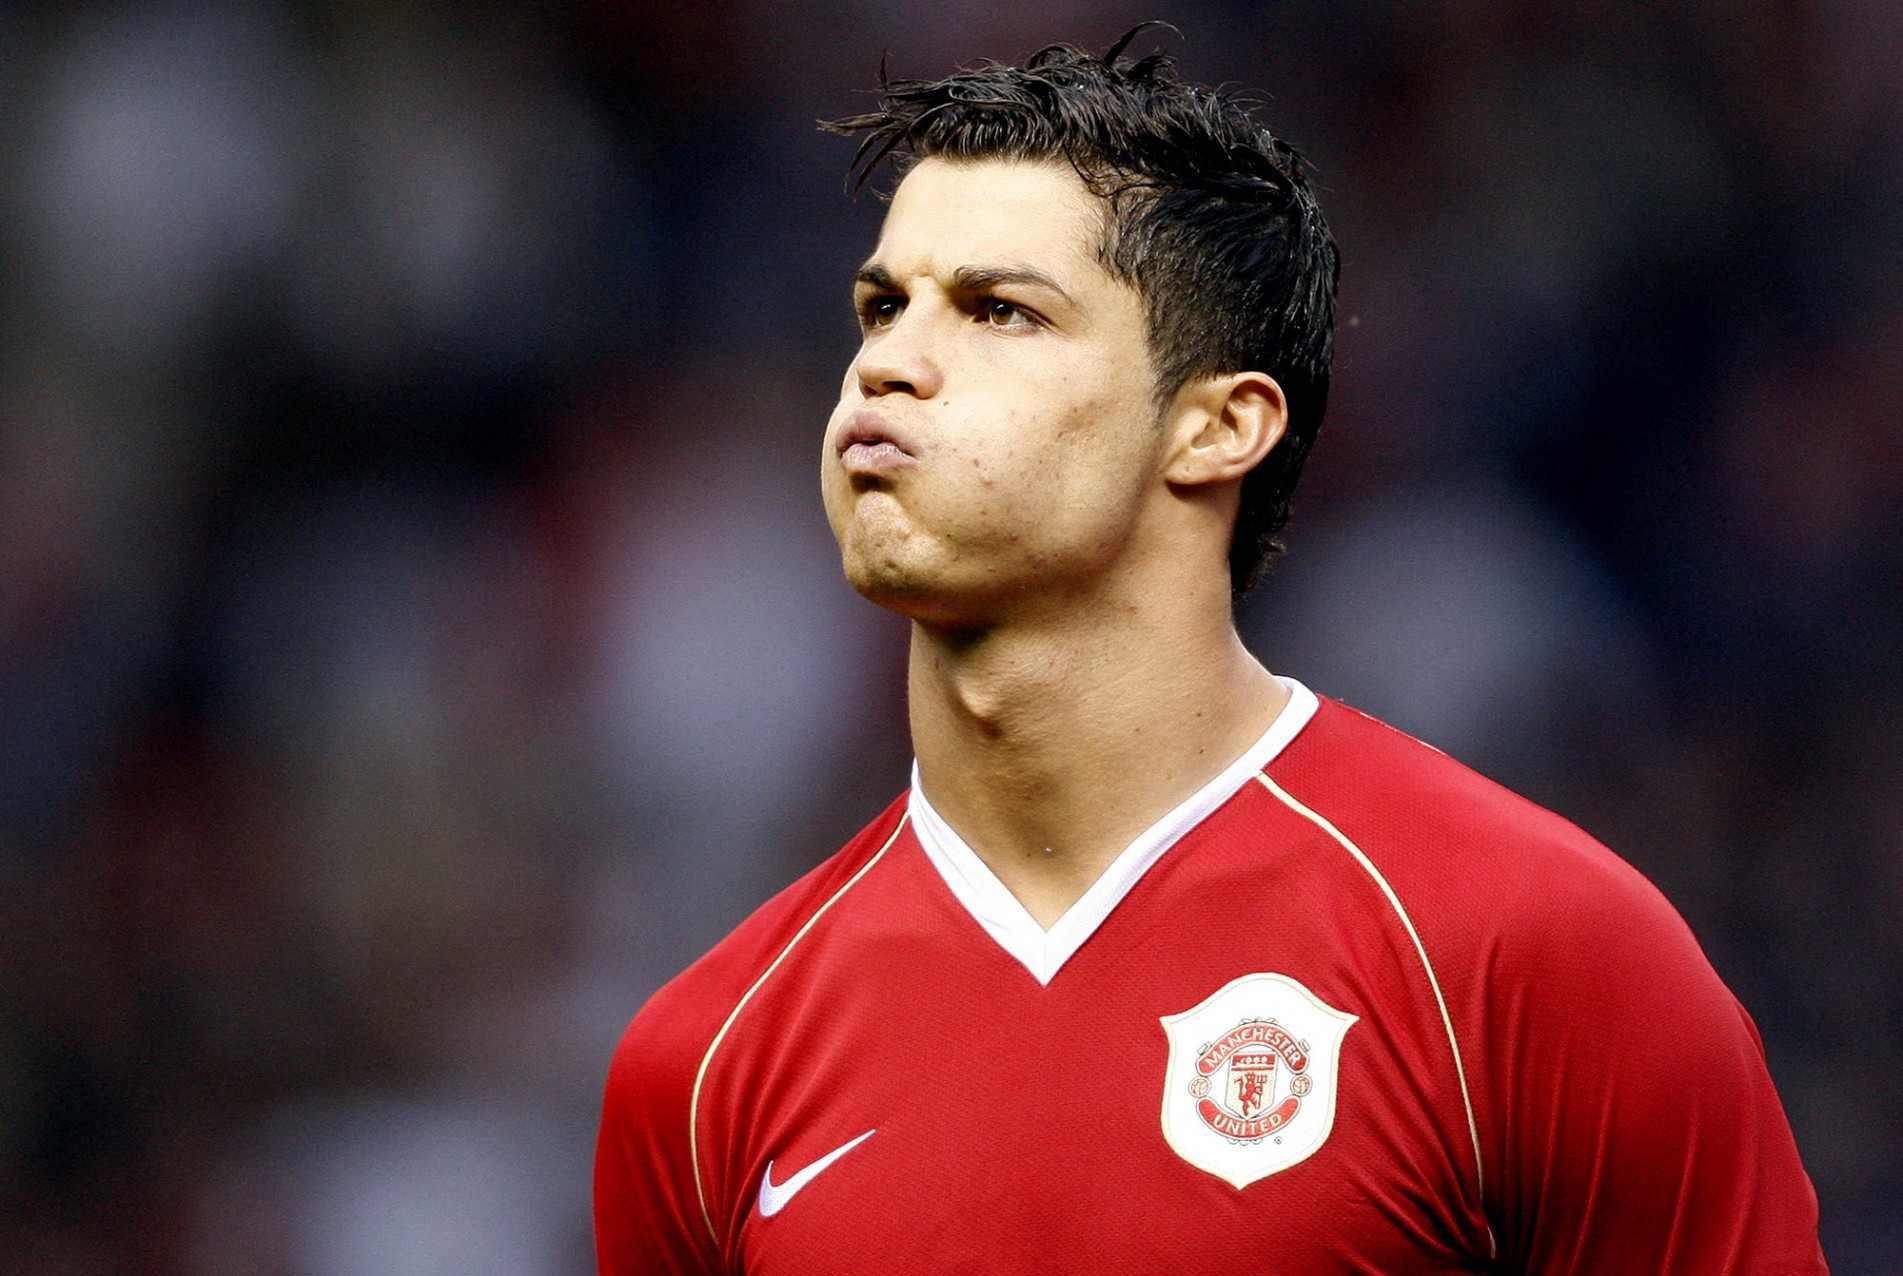 Cristiano Ronaldo, em 2007, quando brilhou pelo Manchester United; ele retorna para recolocar o clube na trilha dos títulos novamente